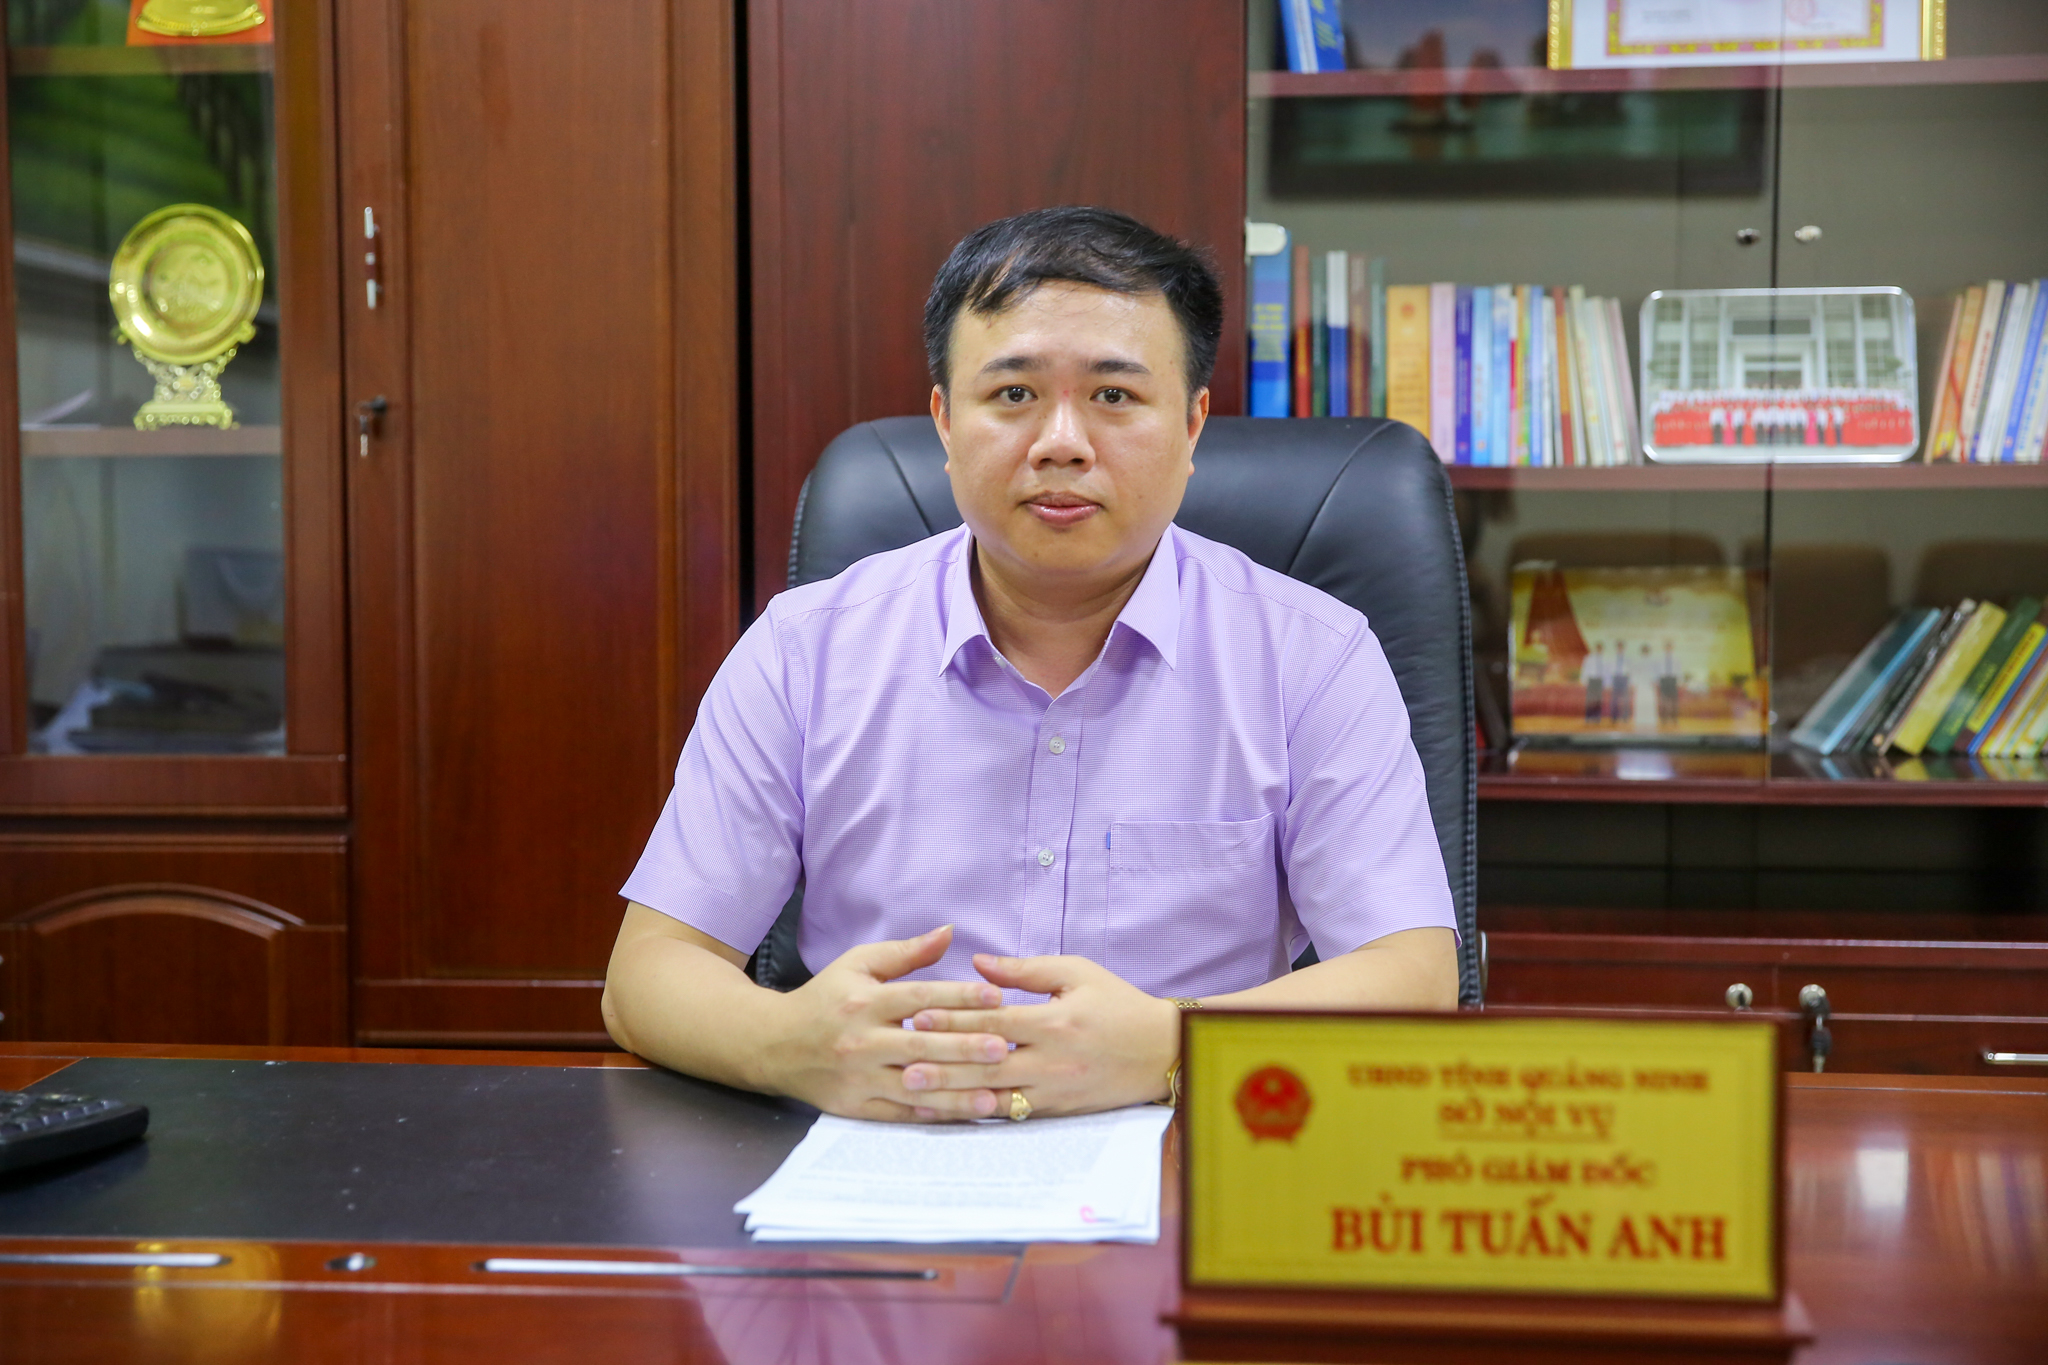 Ông Bùi Tuấn Anh, Phó giám đốc Sở Nội vụ tỉnh Quảng Ninh. (Ảnh: Minh Sơn/Vietnam+)